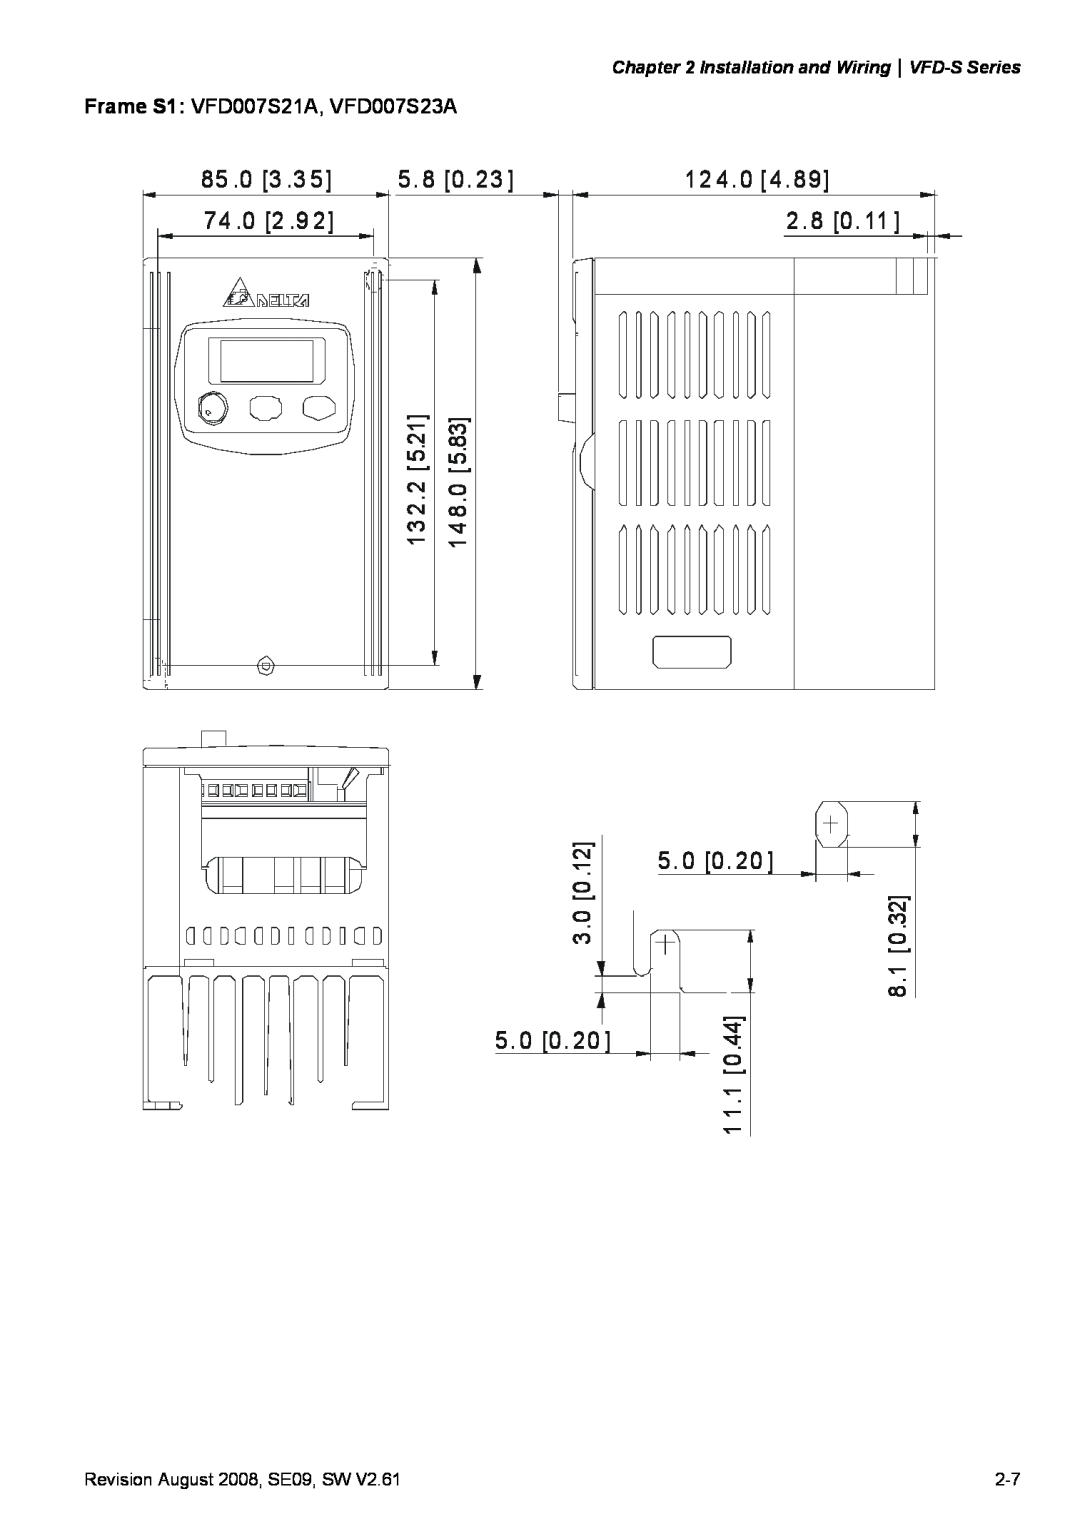 Delta Electronics VFD-S manual 85 .0 3 .3 74 .0 2 .9, 5. 8 0, 12 4. 0 4 2. 8 0 5. 0 0, 2.25.21, 8.05.83, 3.0 0, 8.1 1 